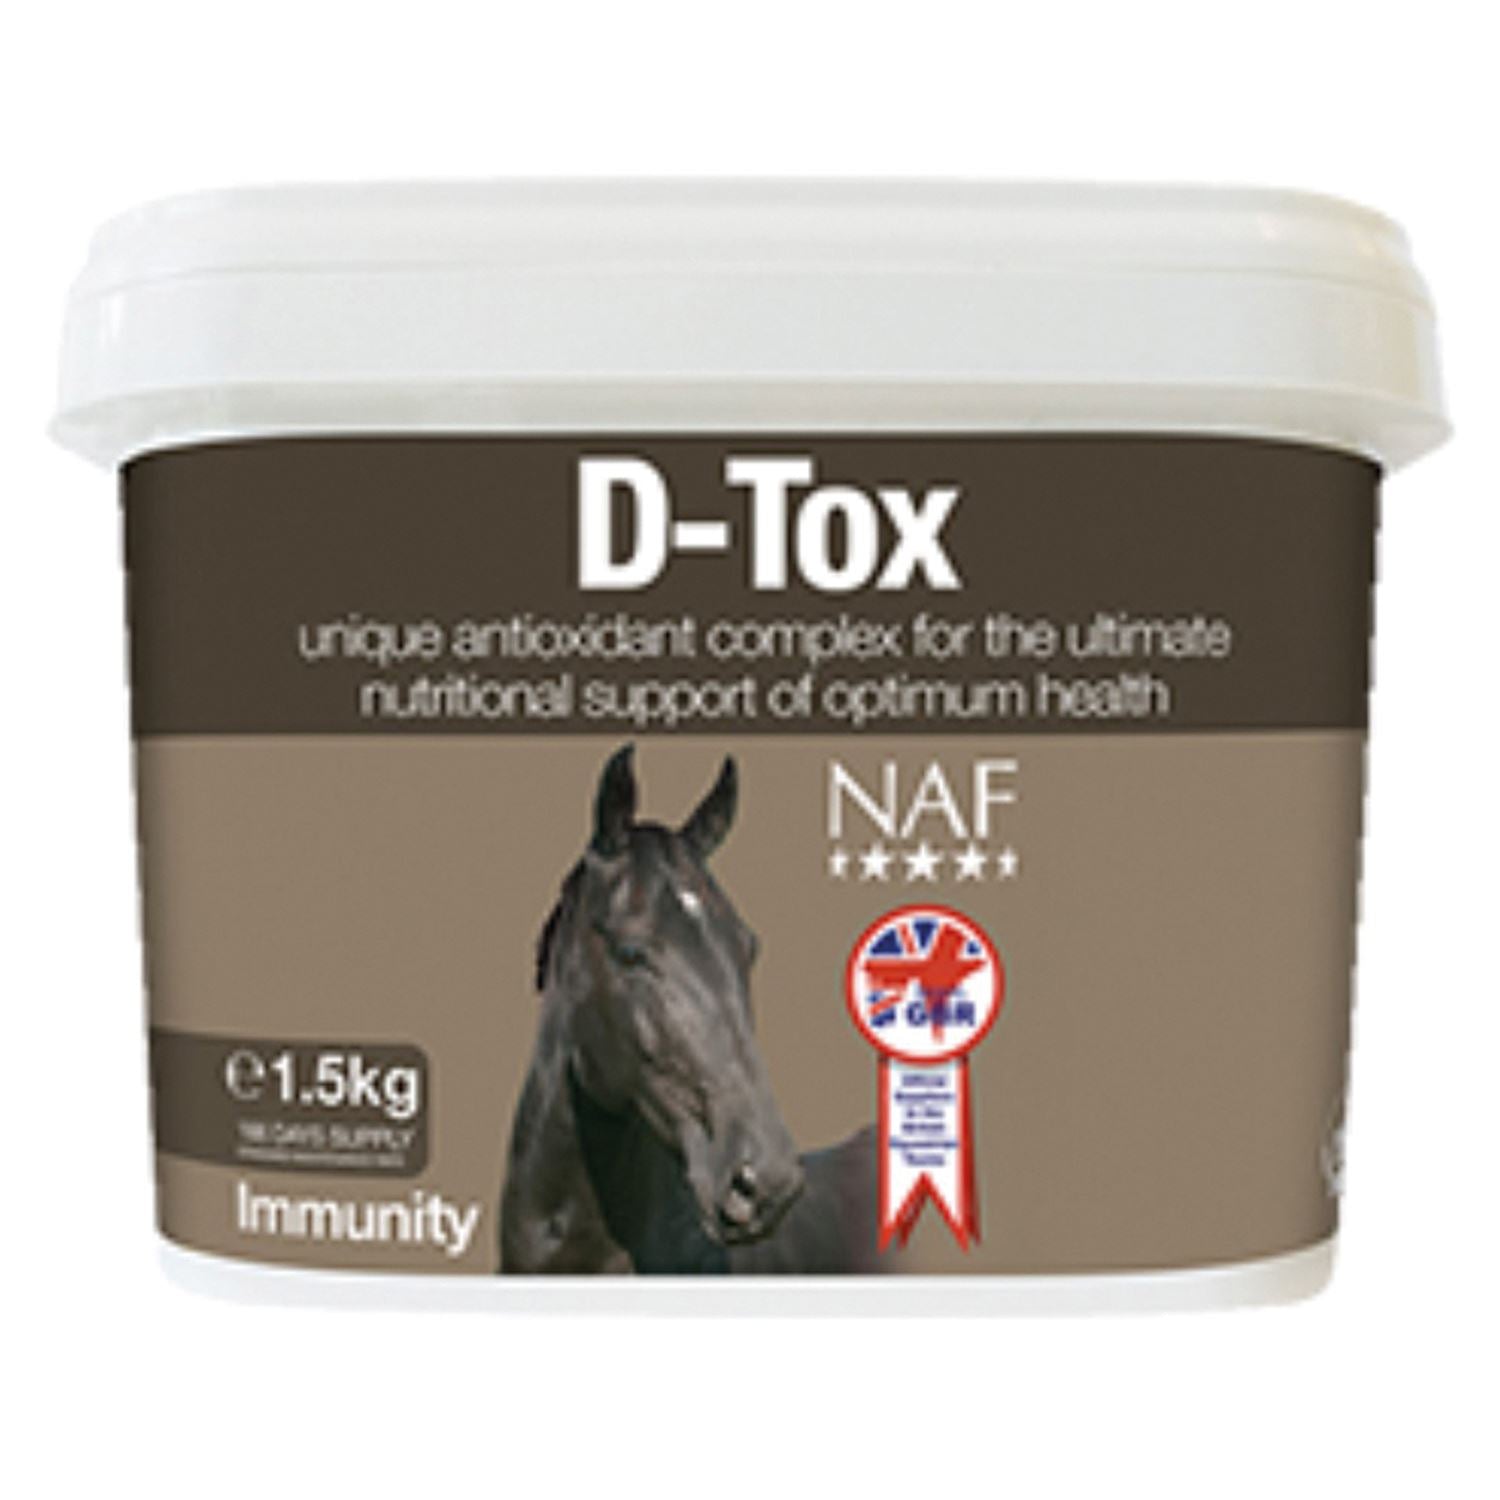 NAF D-Tox - Just Horse Riders